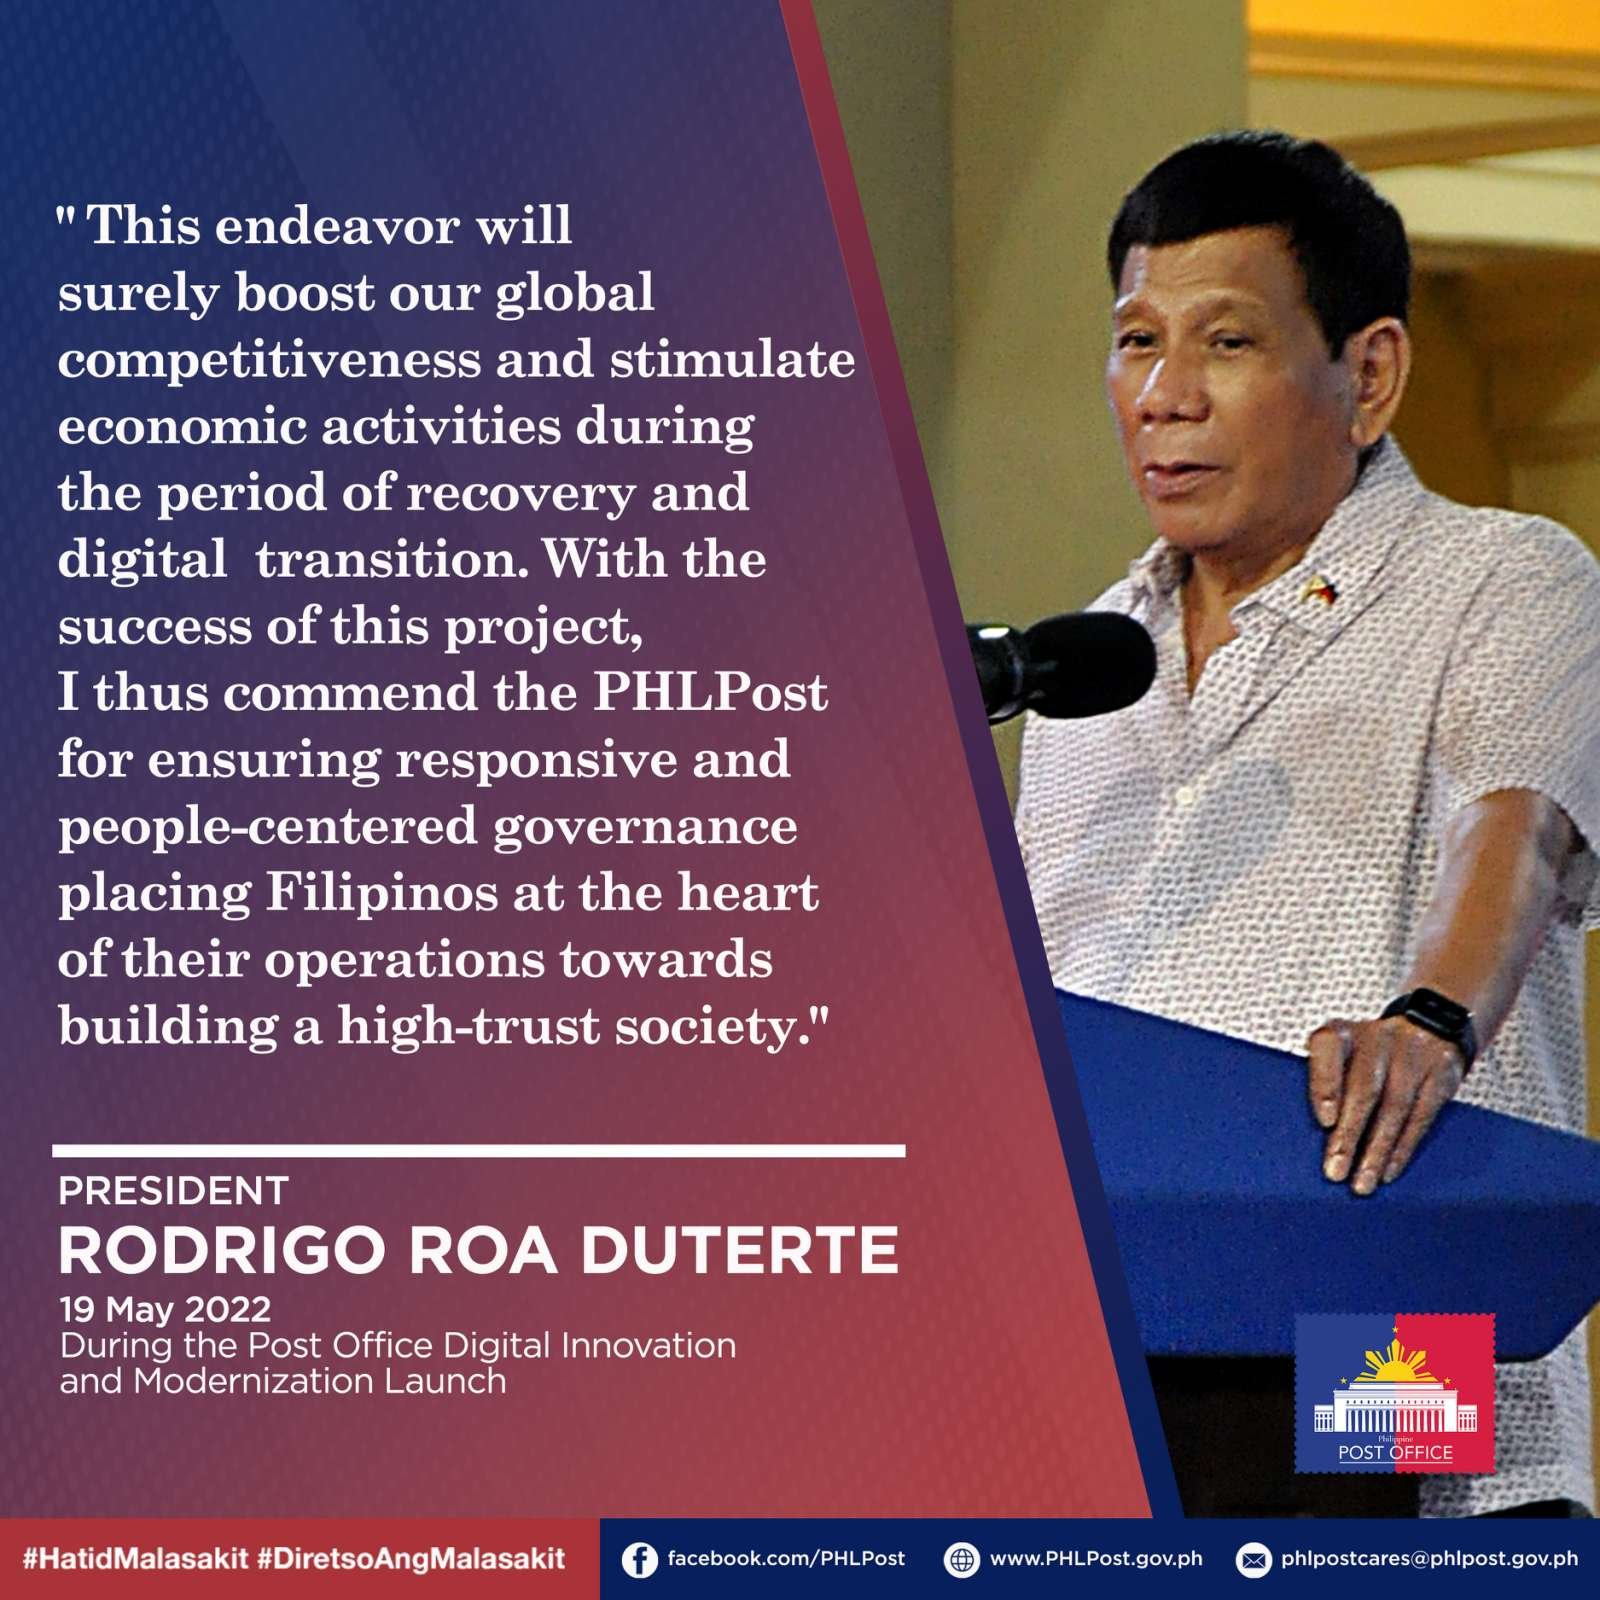 President Duterte on Post Office Digital Innovation and Modernization Launch